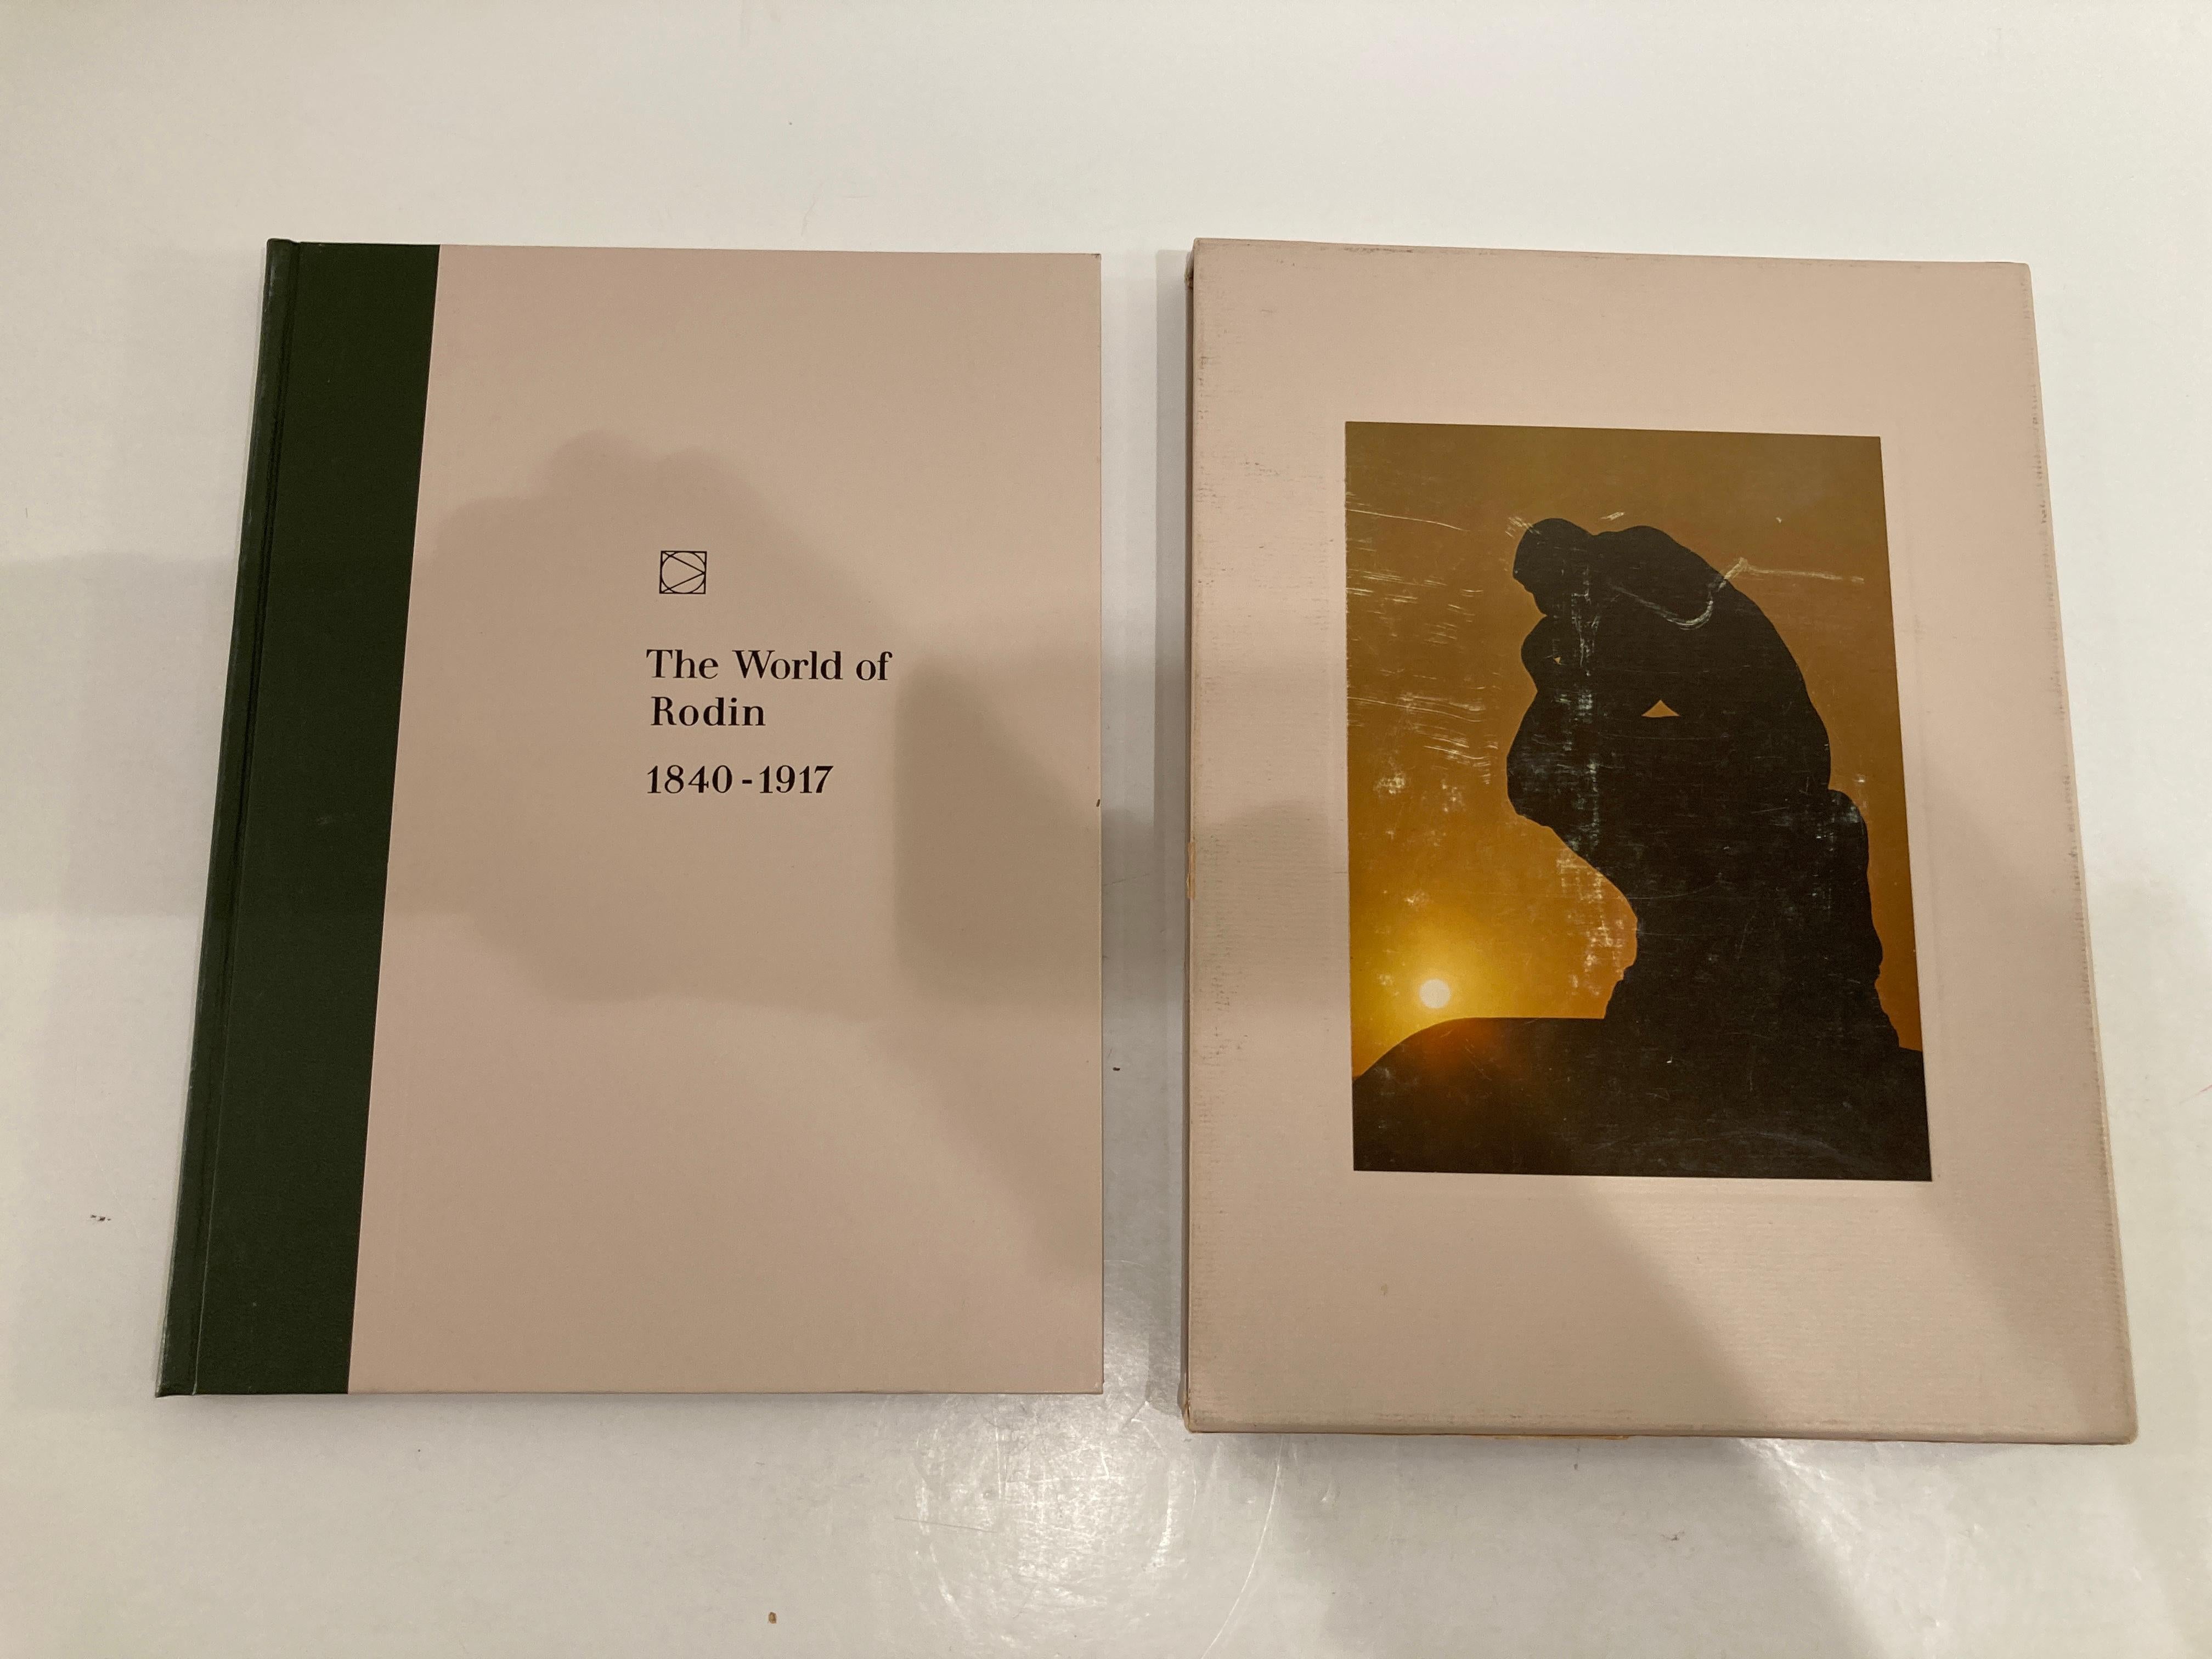 The World of Rodin von William Harlan Hale, veröffentlicht 1976 von Time Life, USA.
Die Welt von Rodin 1840-1917 Hardcover mit Schuber Time Life Vintage Book.
192 Seiten, illustriertes Vorsatzpapier und zahlreiche Farbtafeln und andere